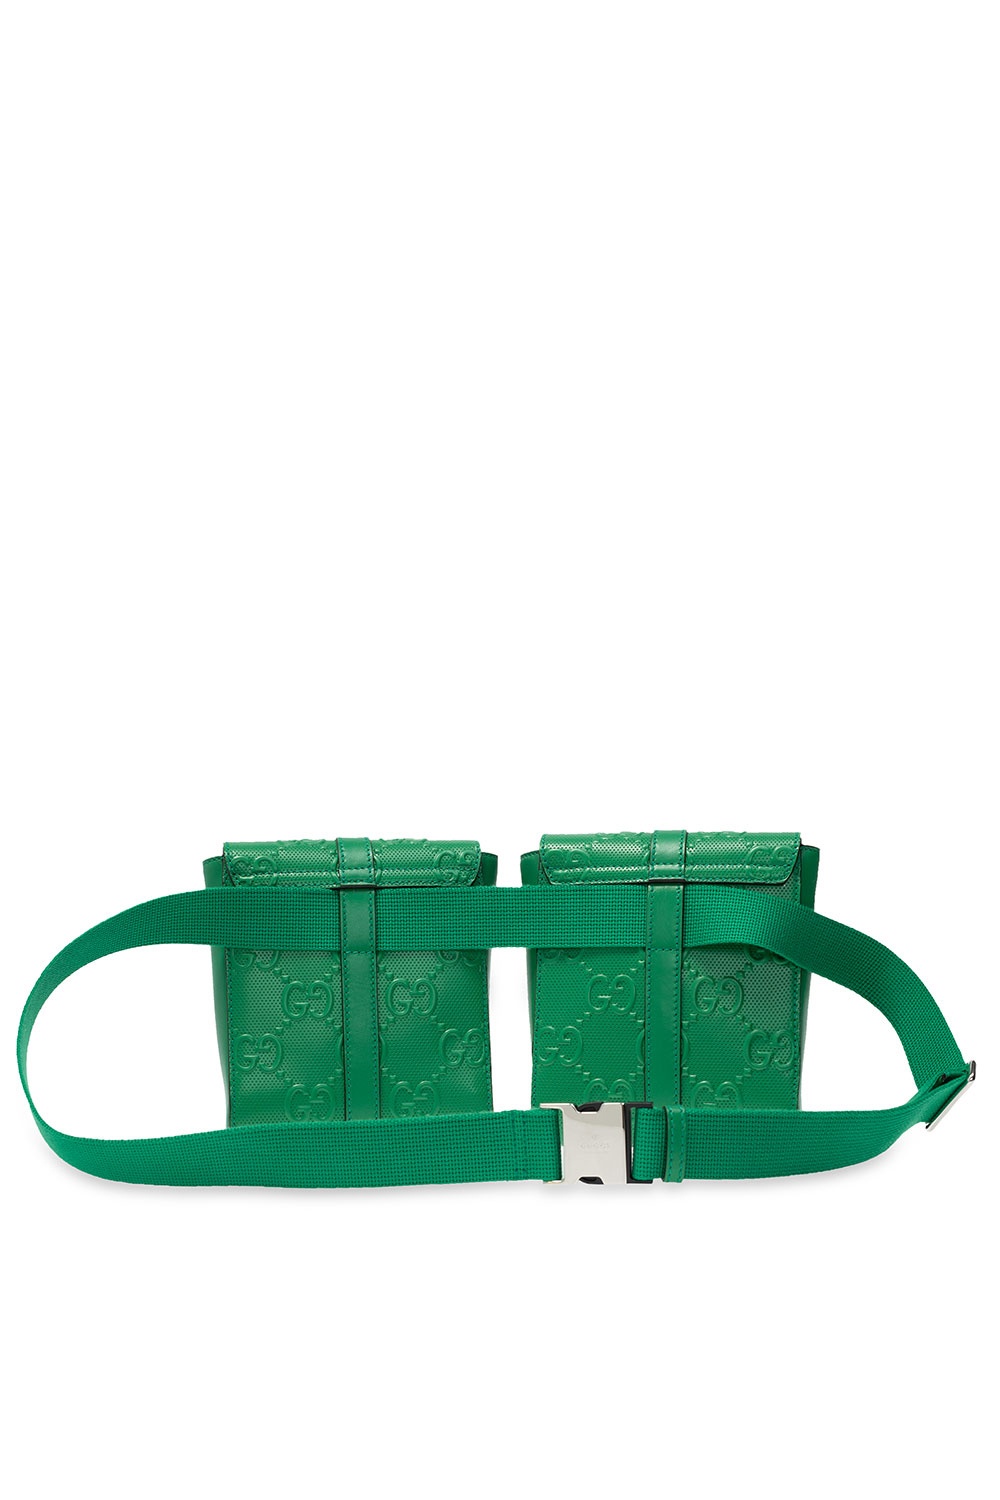 gucci green belt bag